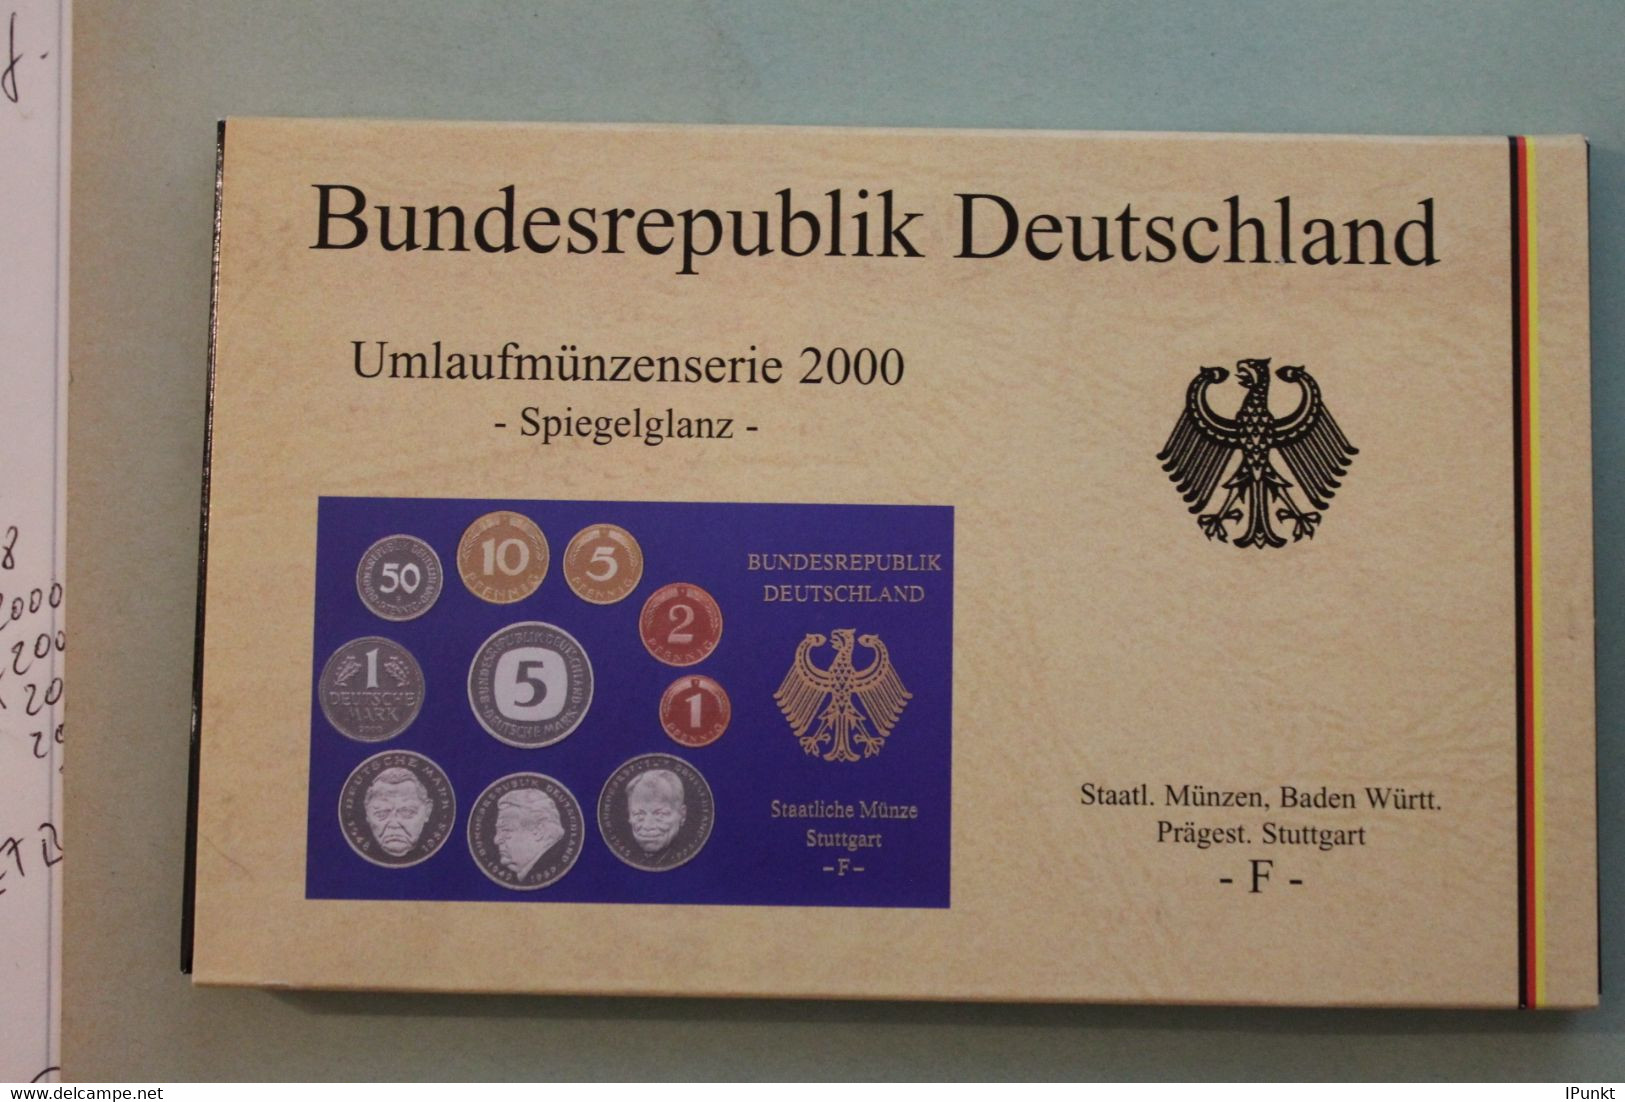 Deutschland, Kursmünzensatz; Umlaufmünzenserie 2000 F, Spiegelglanz (PP) - Mint Sets & Proof Sets